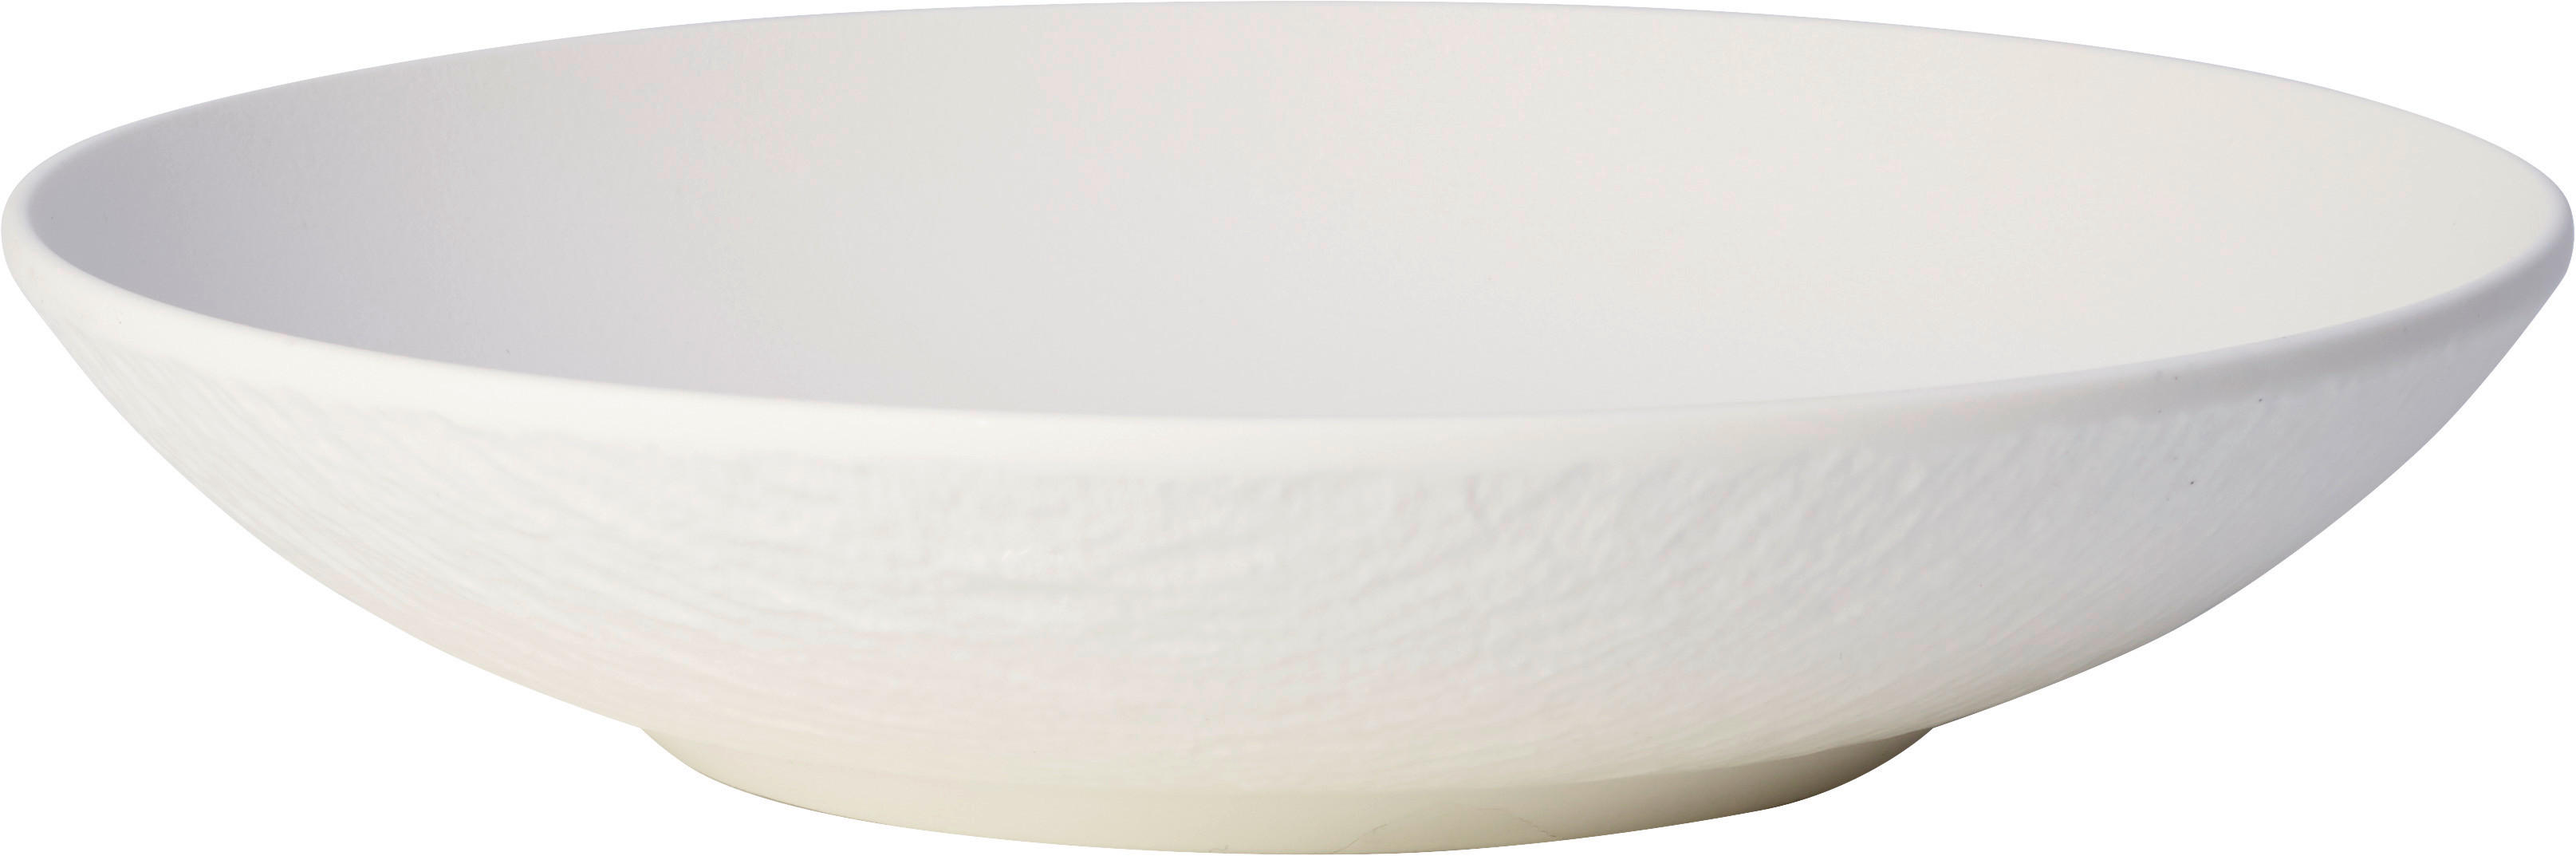 SKÅL   - vit, Design, keramik (24cm) - Villeroy & Boch